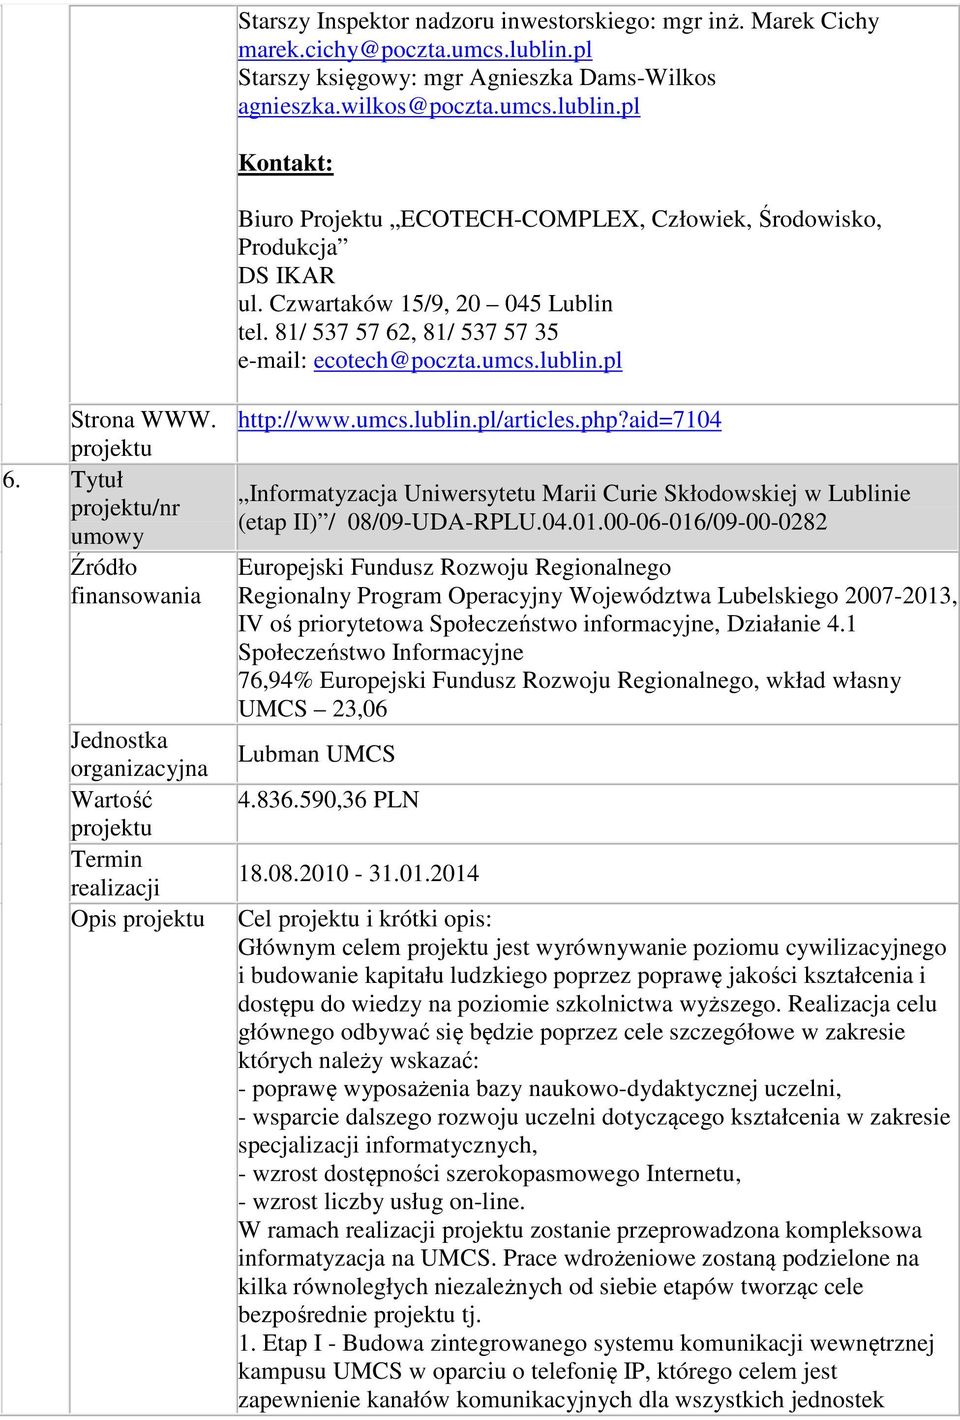 aid=7104 Informatyzacja Uniwersytetu Marii Curie Skłodowskiej w Lublinie (etap II) / 08/09-UDA-RPLU.04.01.